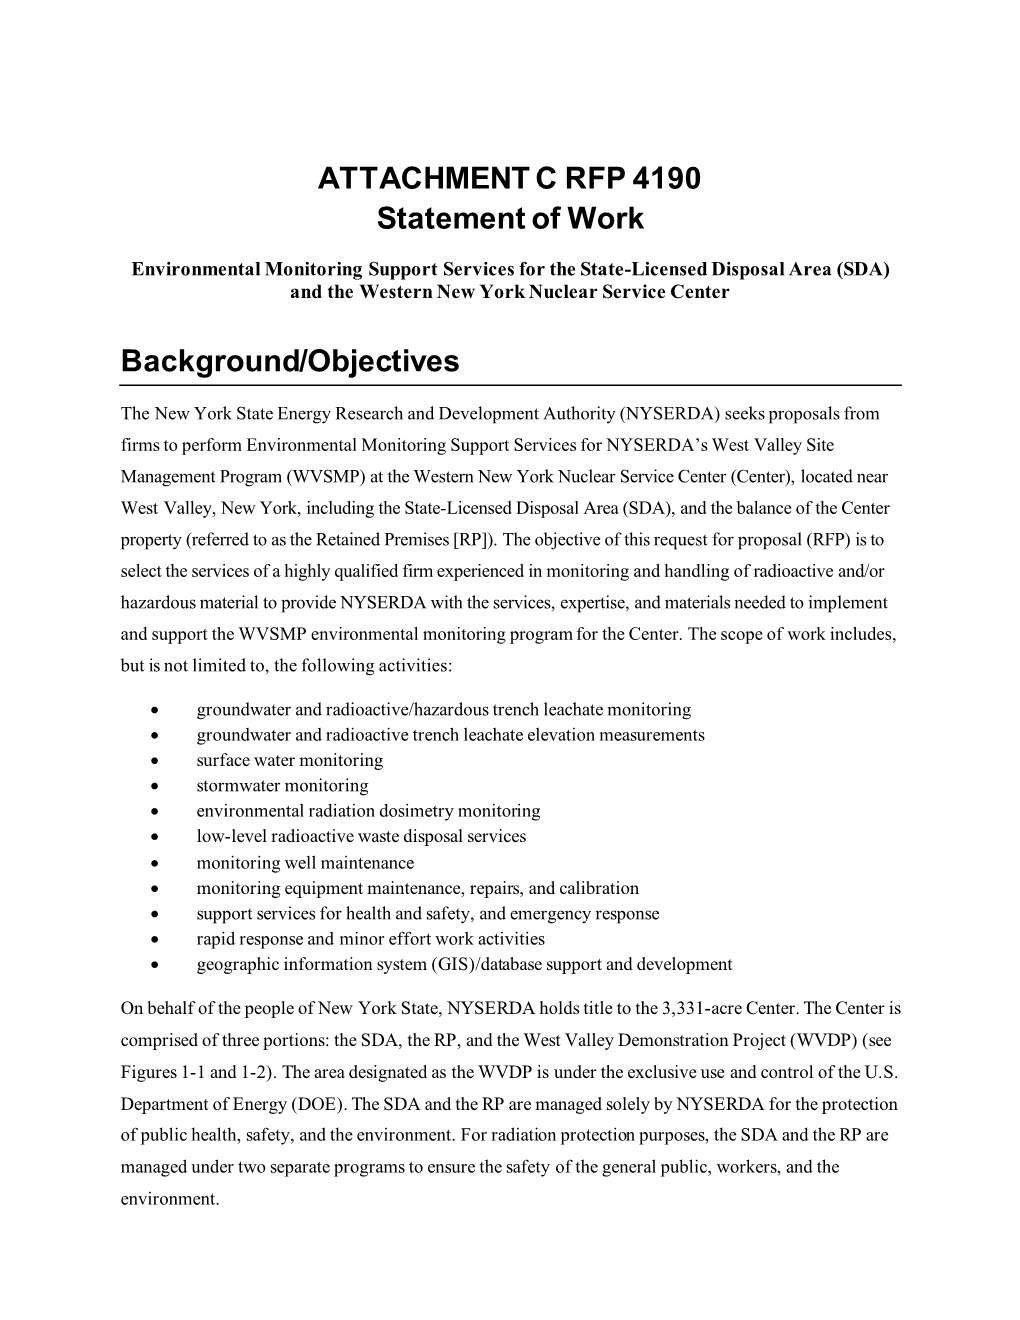 ATTACHMENT C RFP 4190 Statement of Work